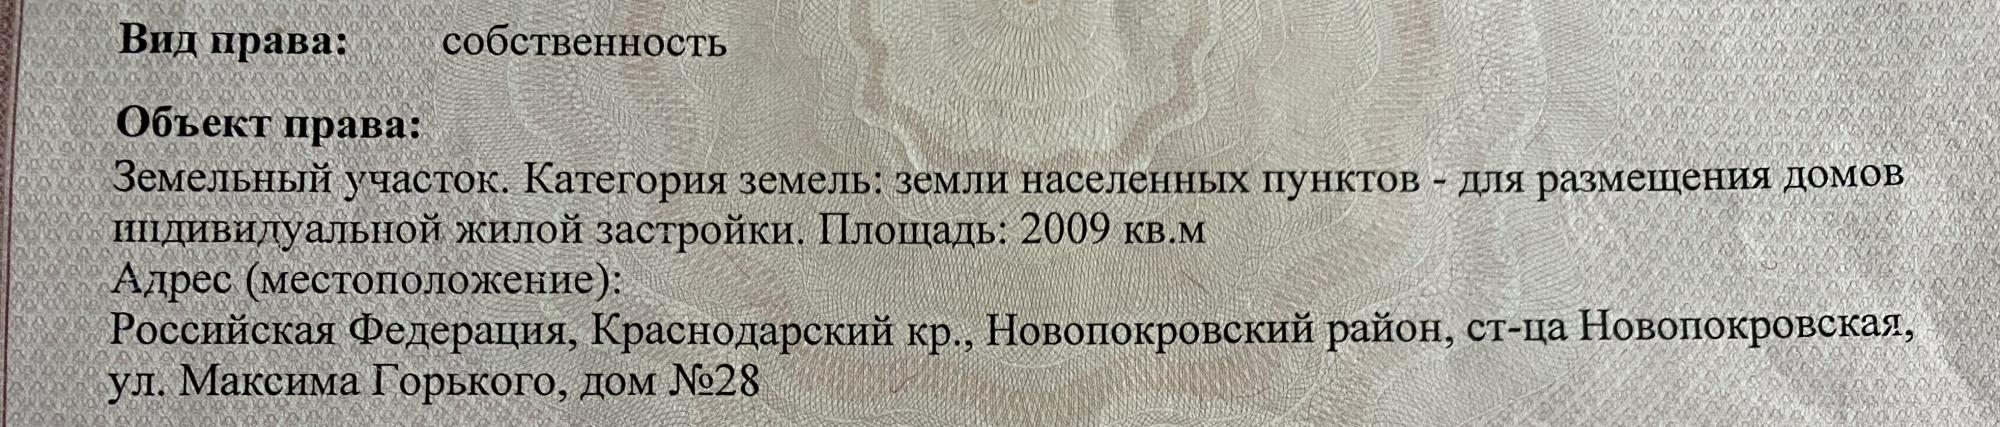 Участок, 2009 сот., поселения (ижс)